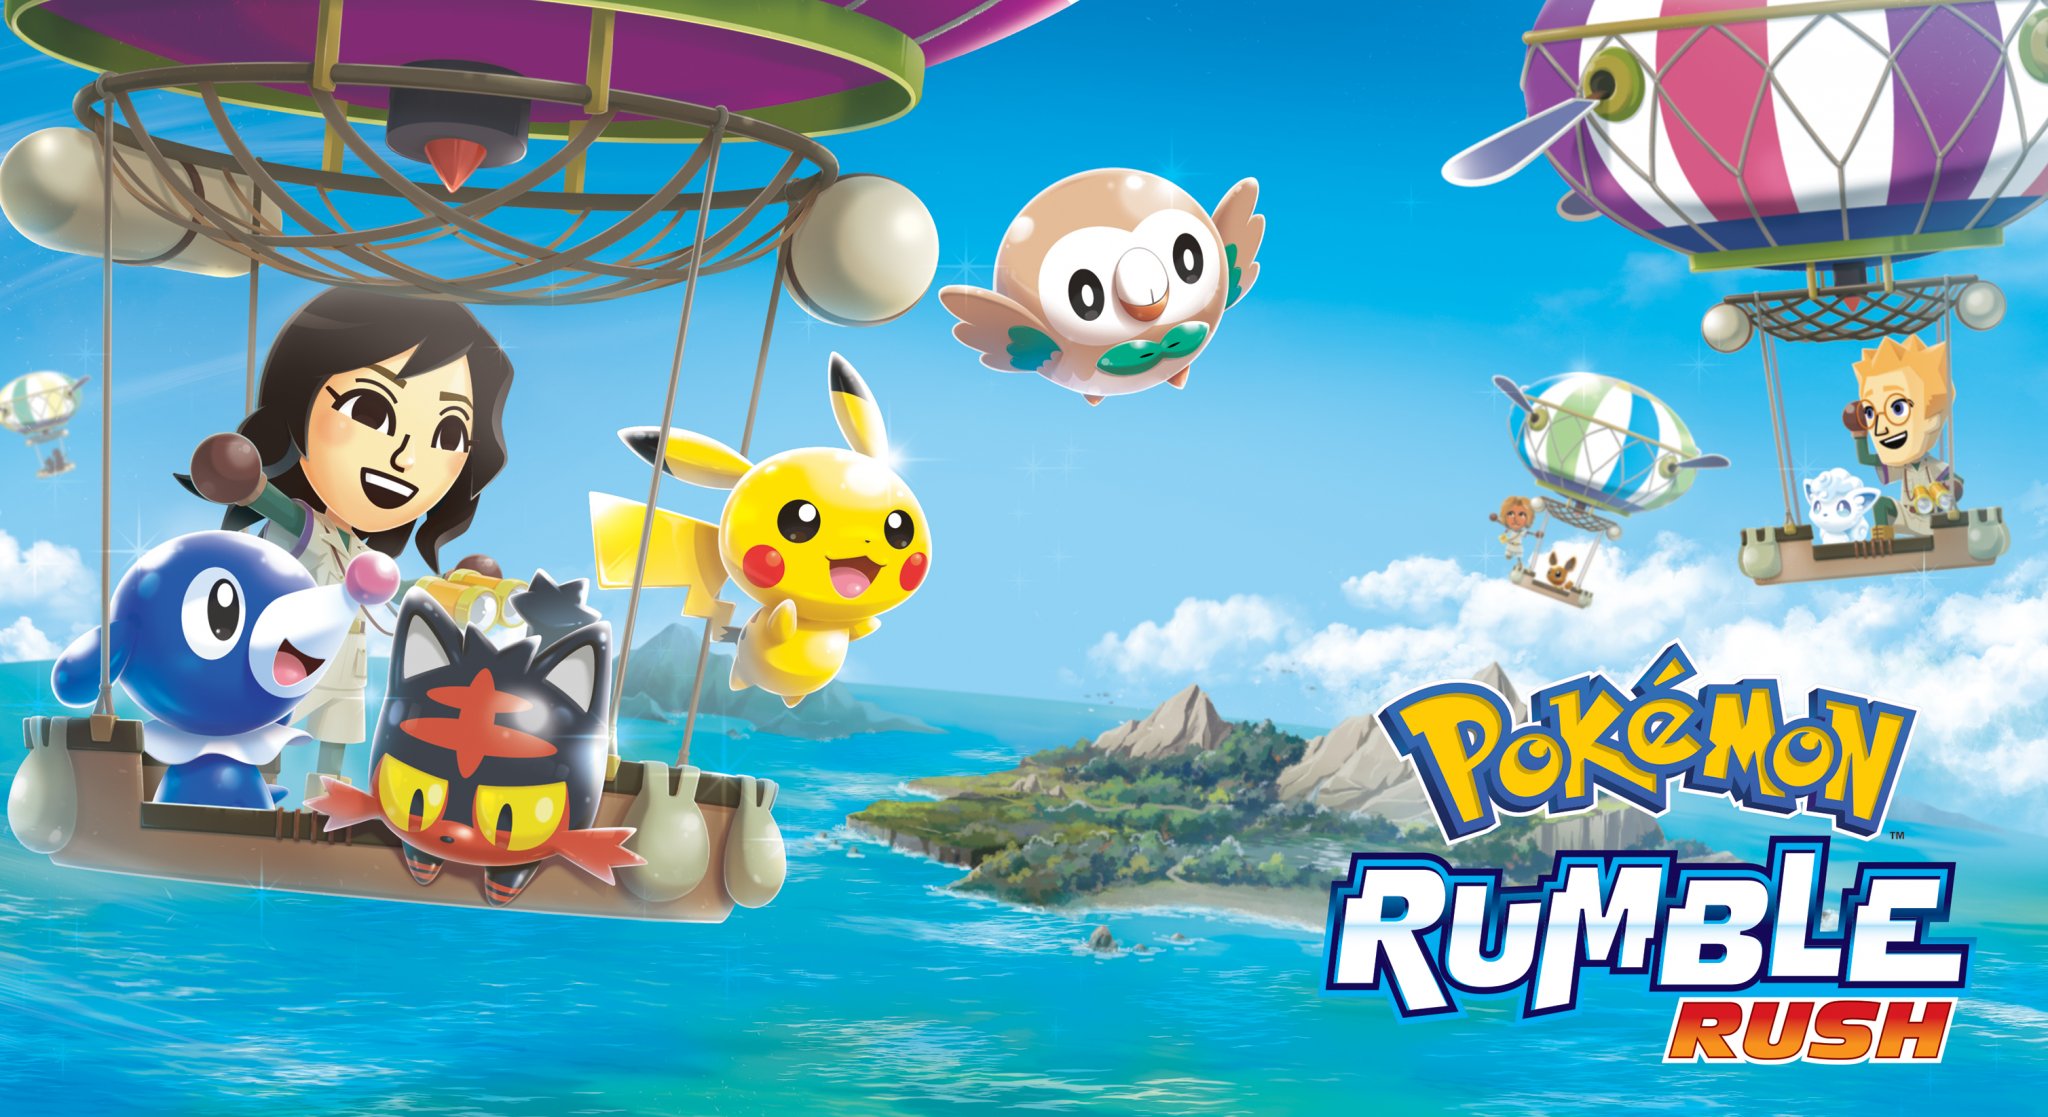 Pokemon Rumble Rush image.jpg